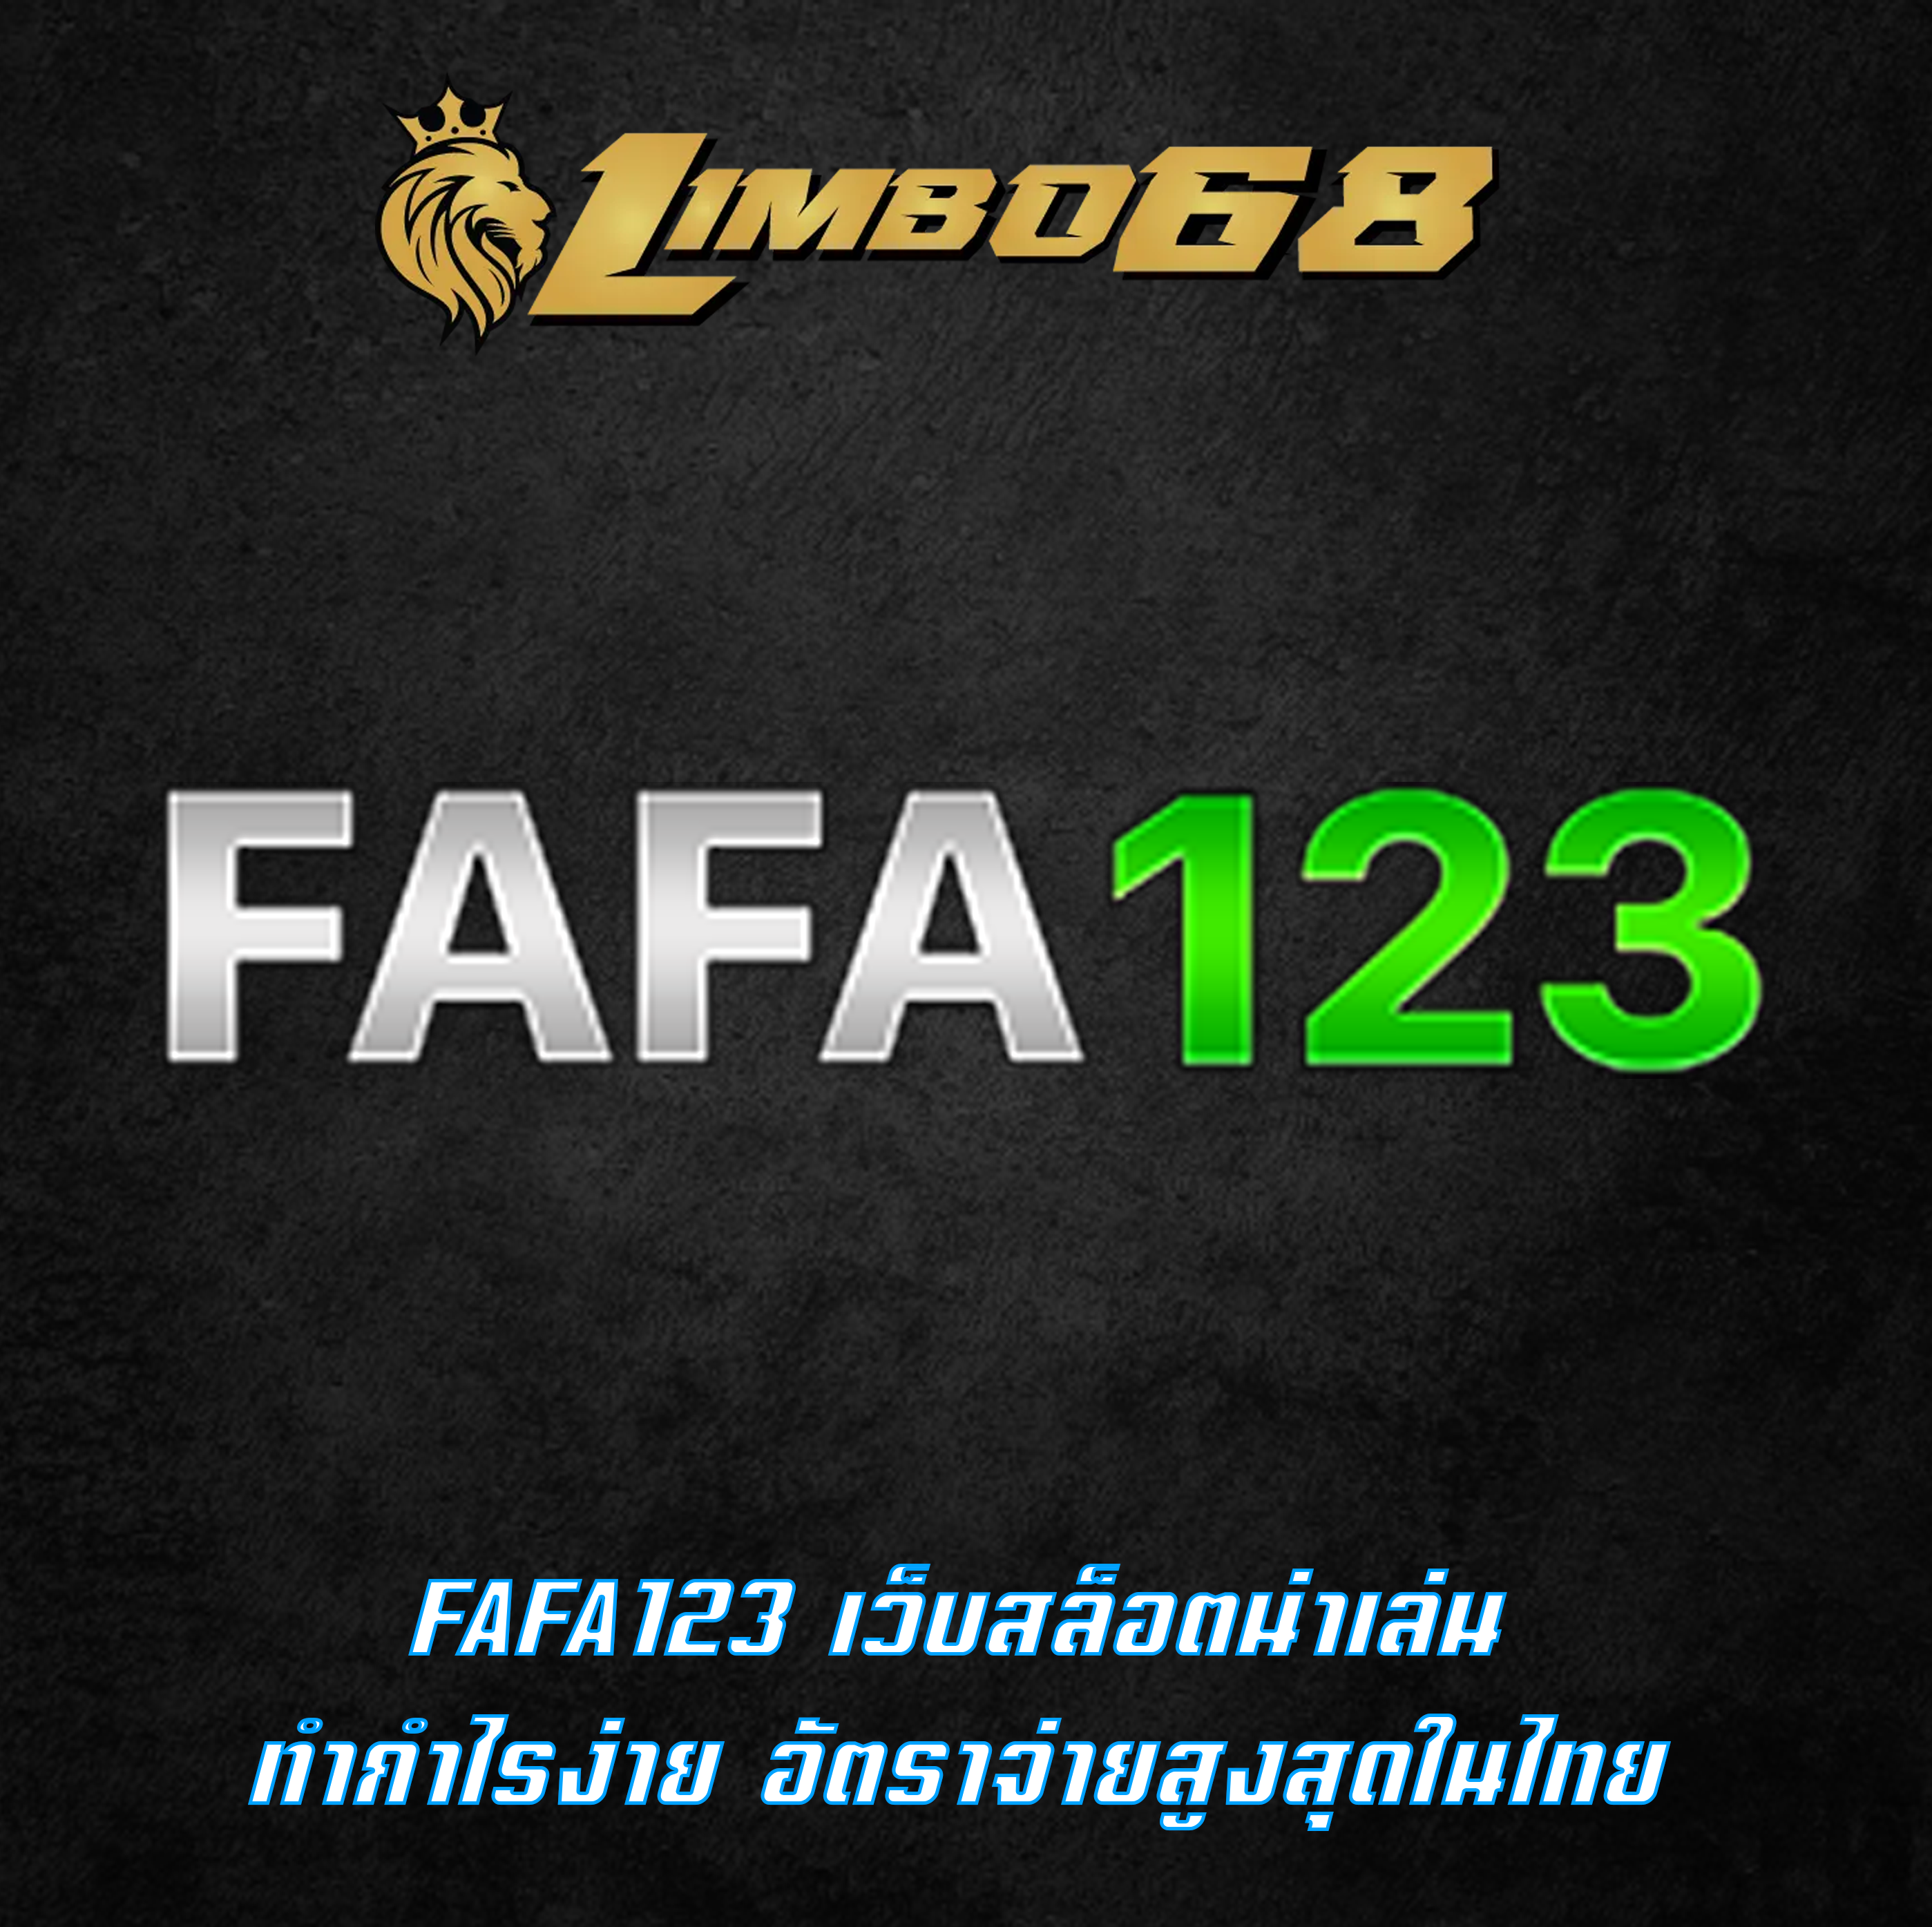 FAFA123 เว็บสล็อตน่าเล่น ทำกำไรง่าย อัตราจ่ายสูงสุดในไทย